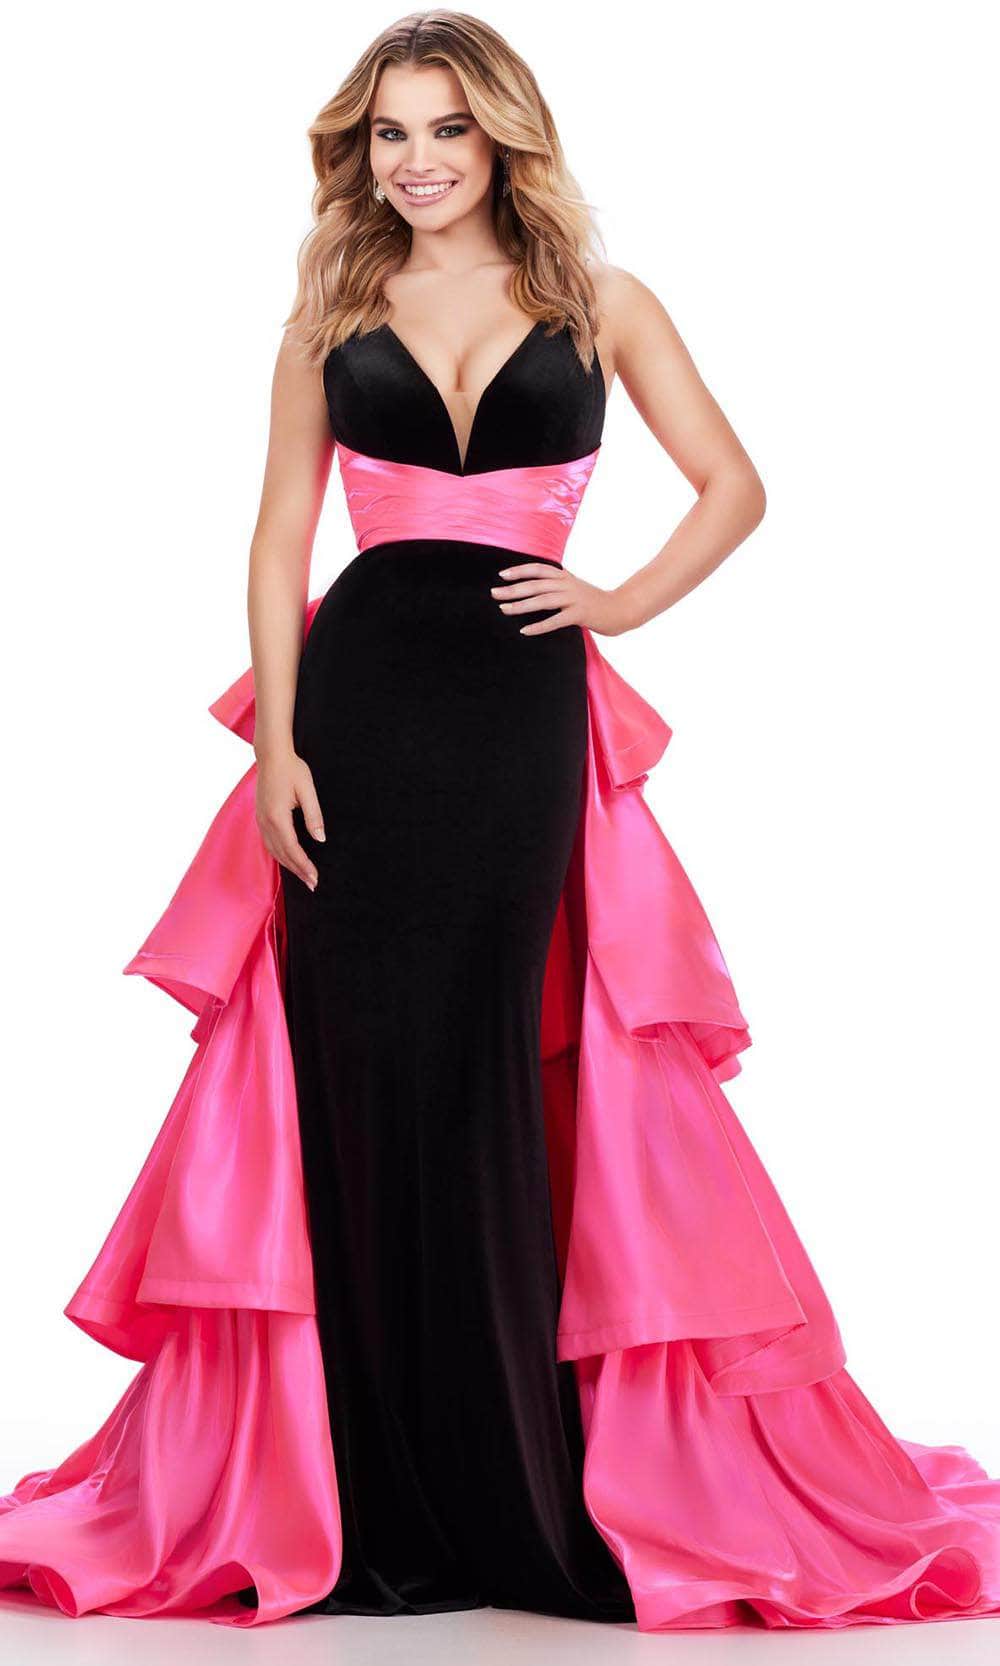 Image of Ashley Lauren 11643 - Sleeveless Plunging V-Neck Prom Dress